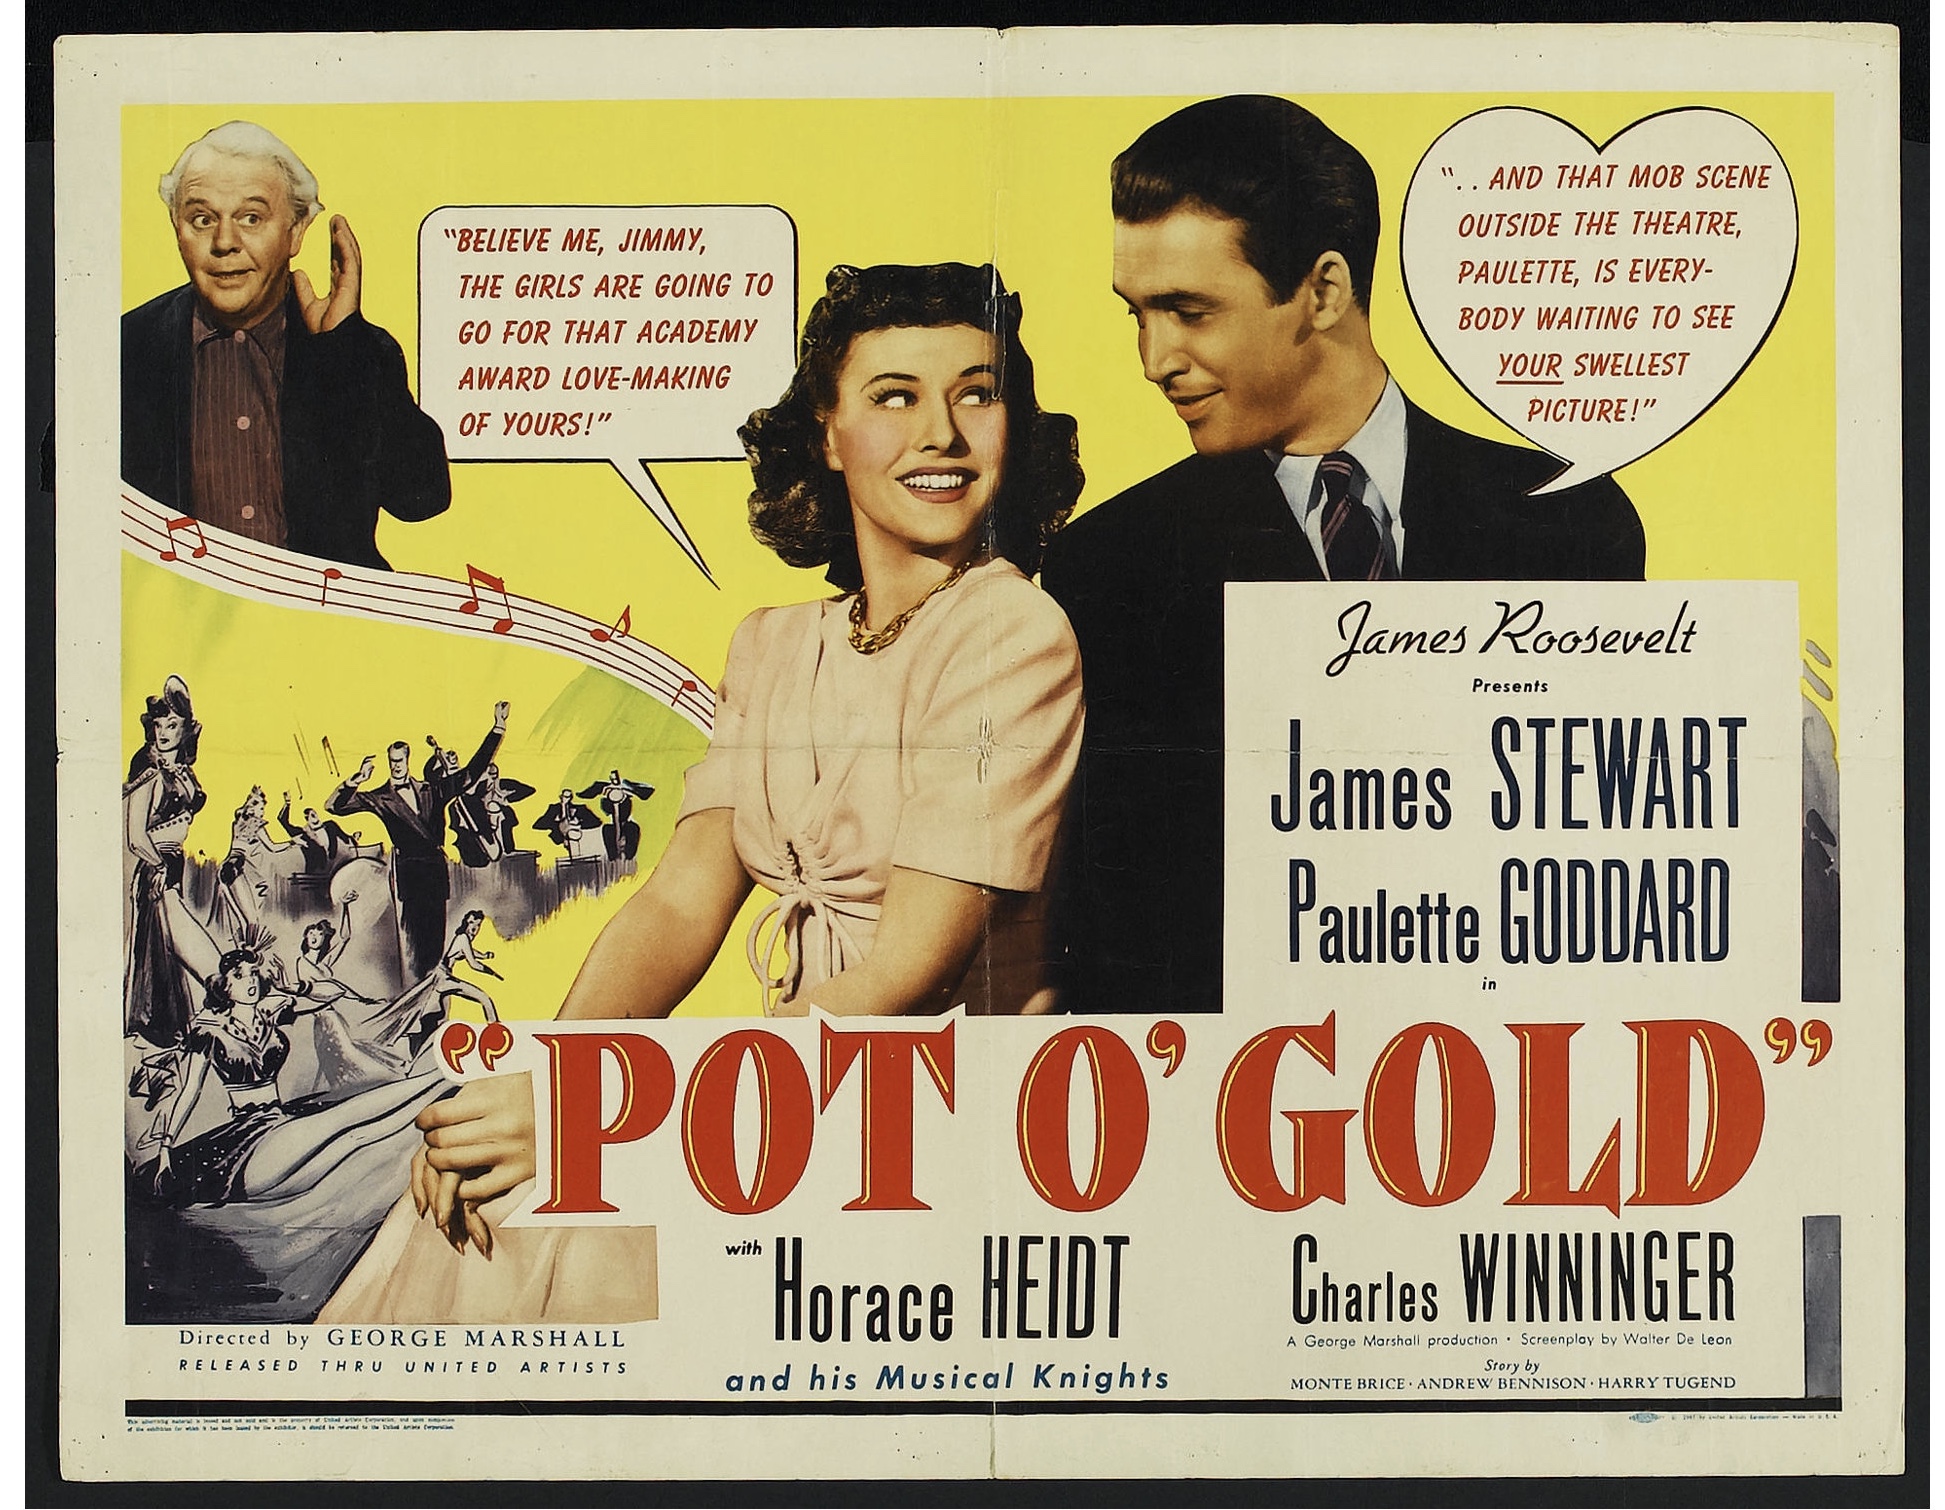 Pot o' Gold (1941)